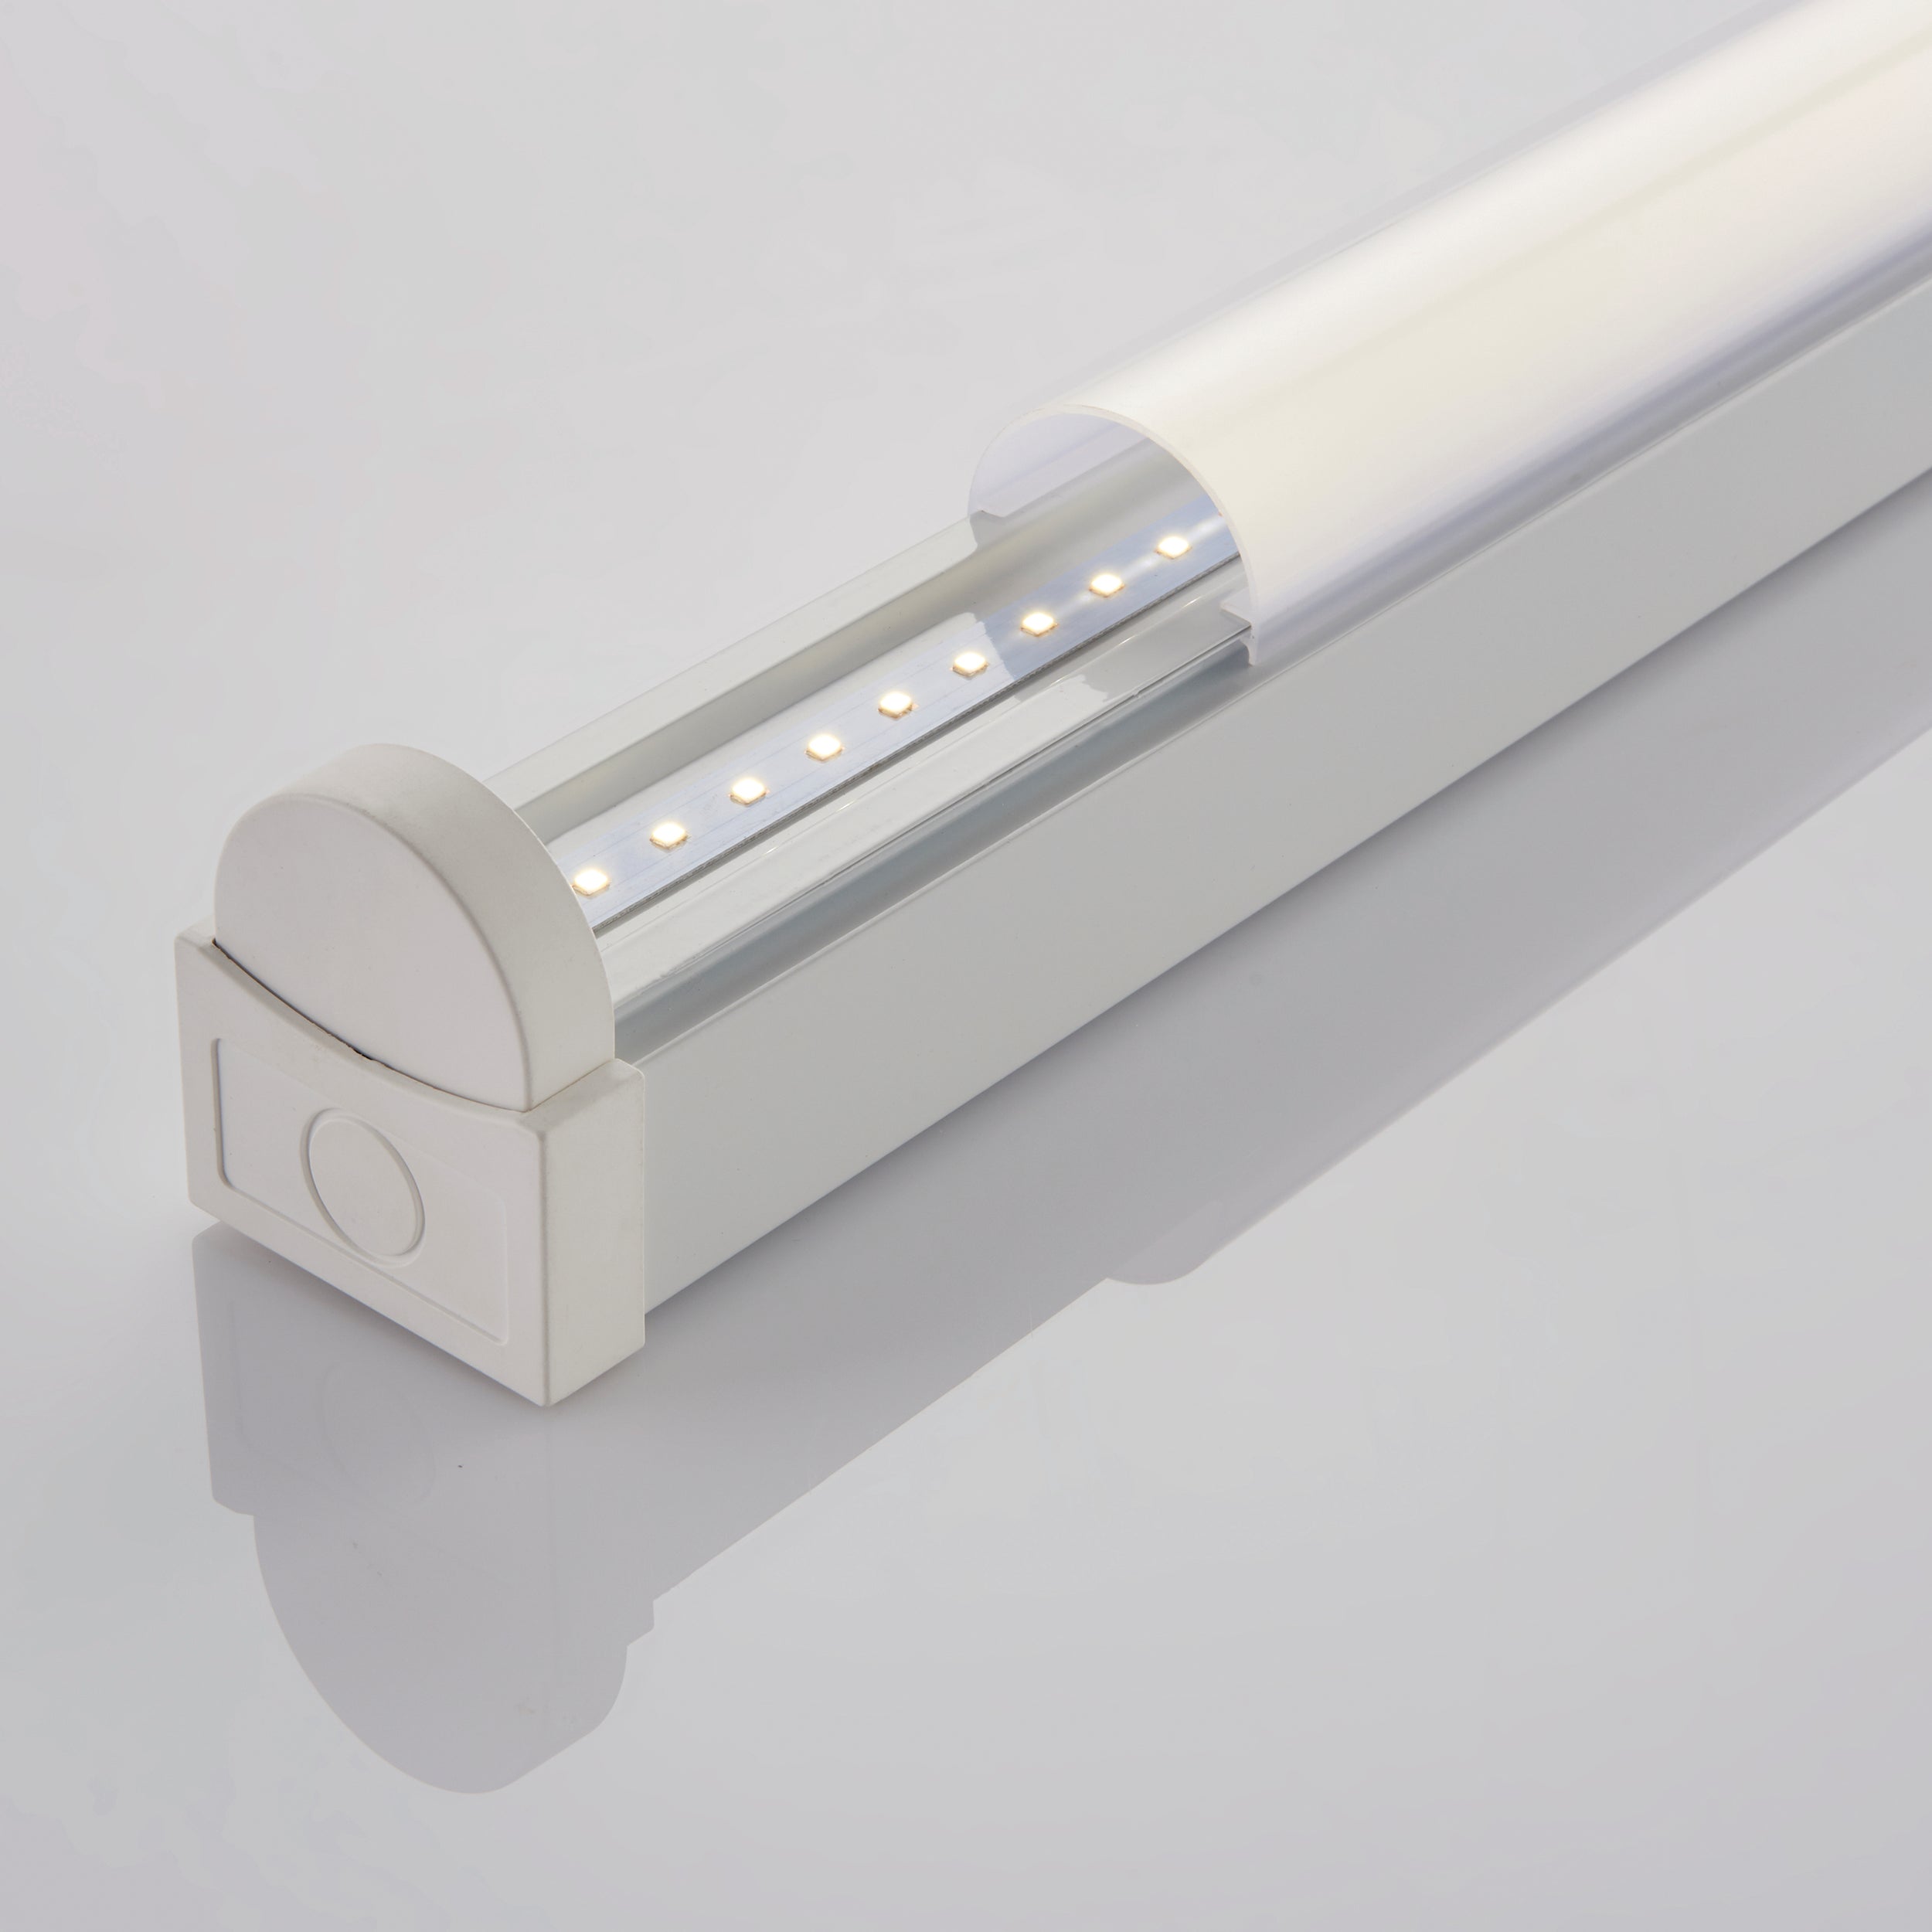 Saxby Lighting Rular 6ft standard LED Batten fitting 52W 78556